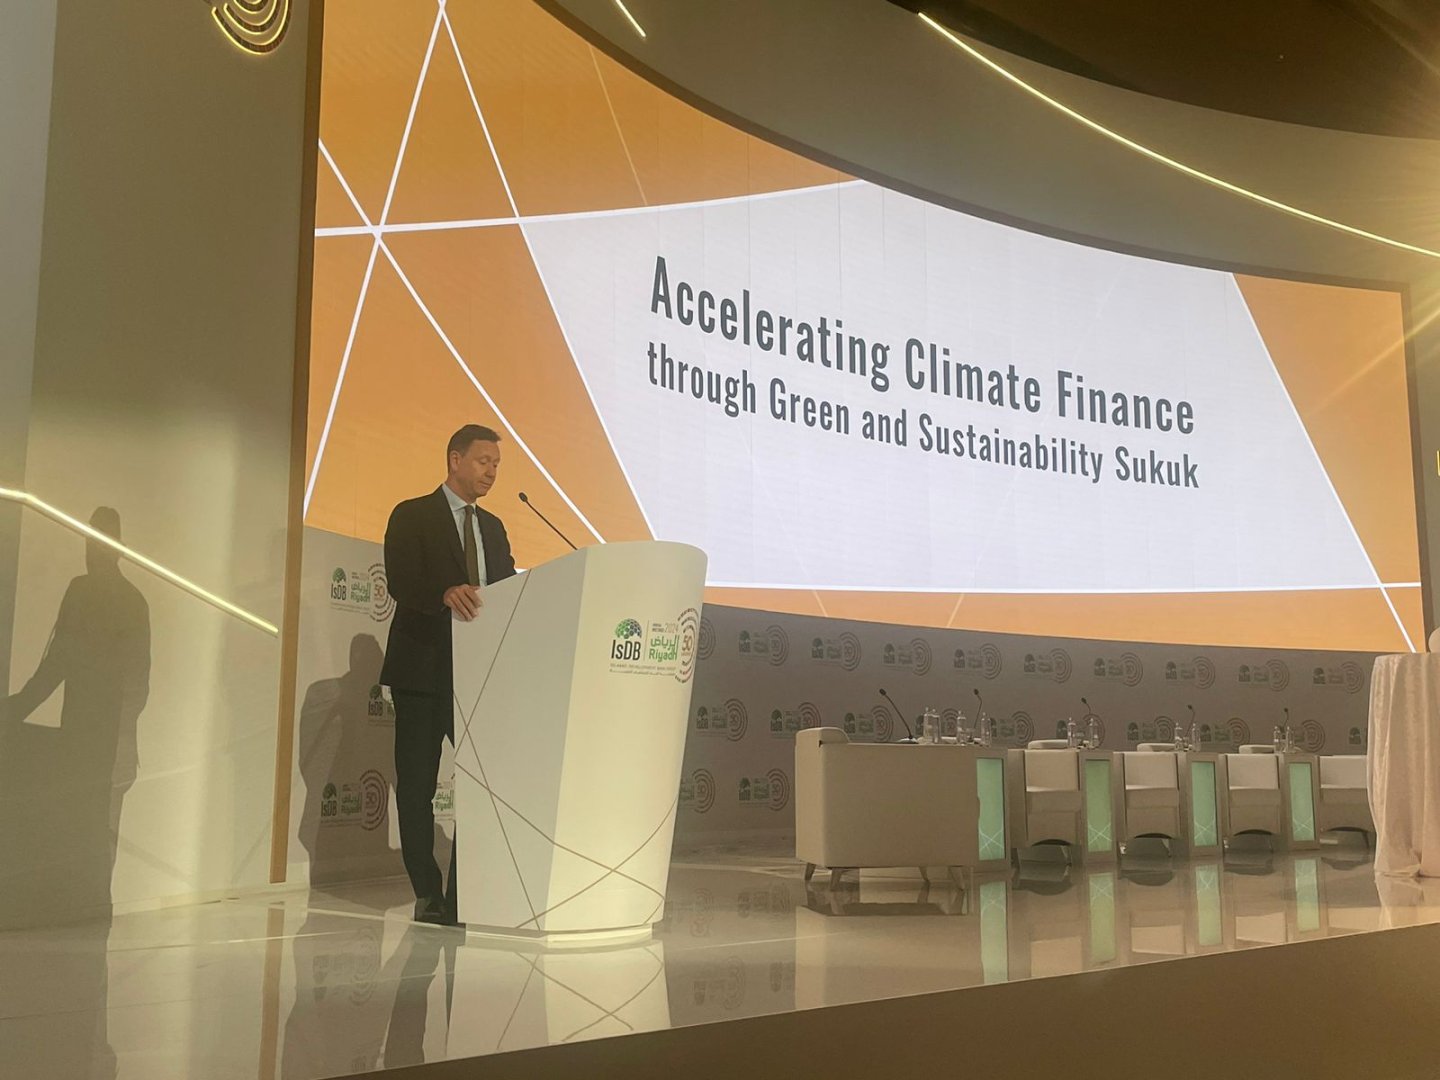 "Зеленый" сукук поможет восполнить огромный разрыв в финансировании борьбы с изменением климата – исполнительный директор ICMA